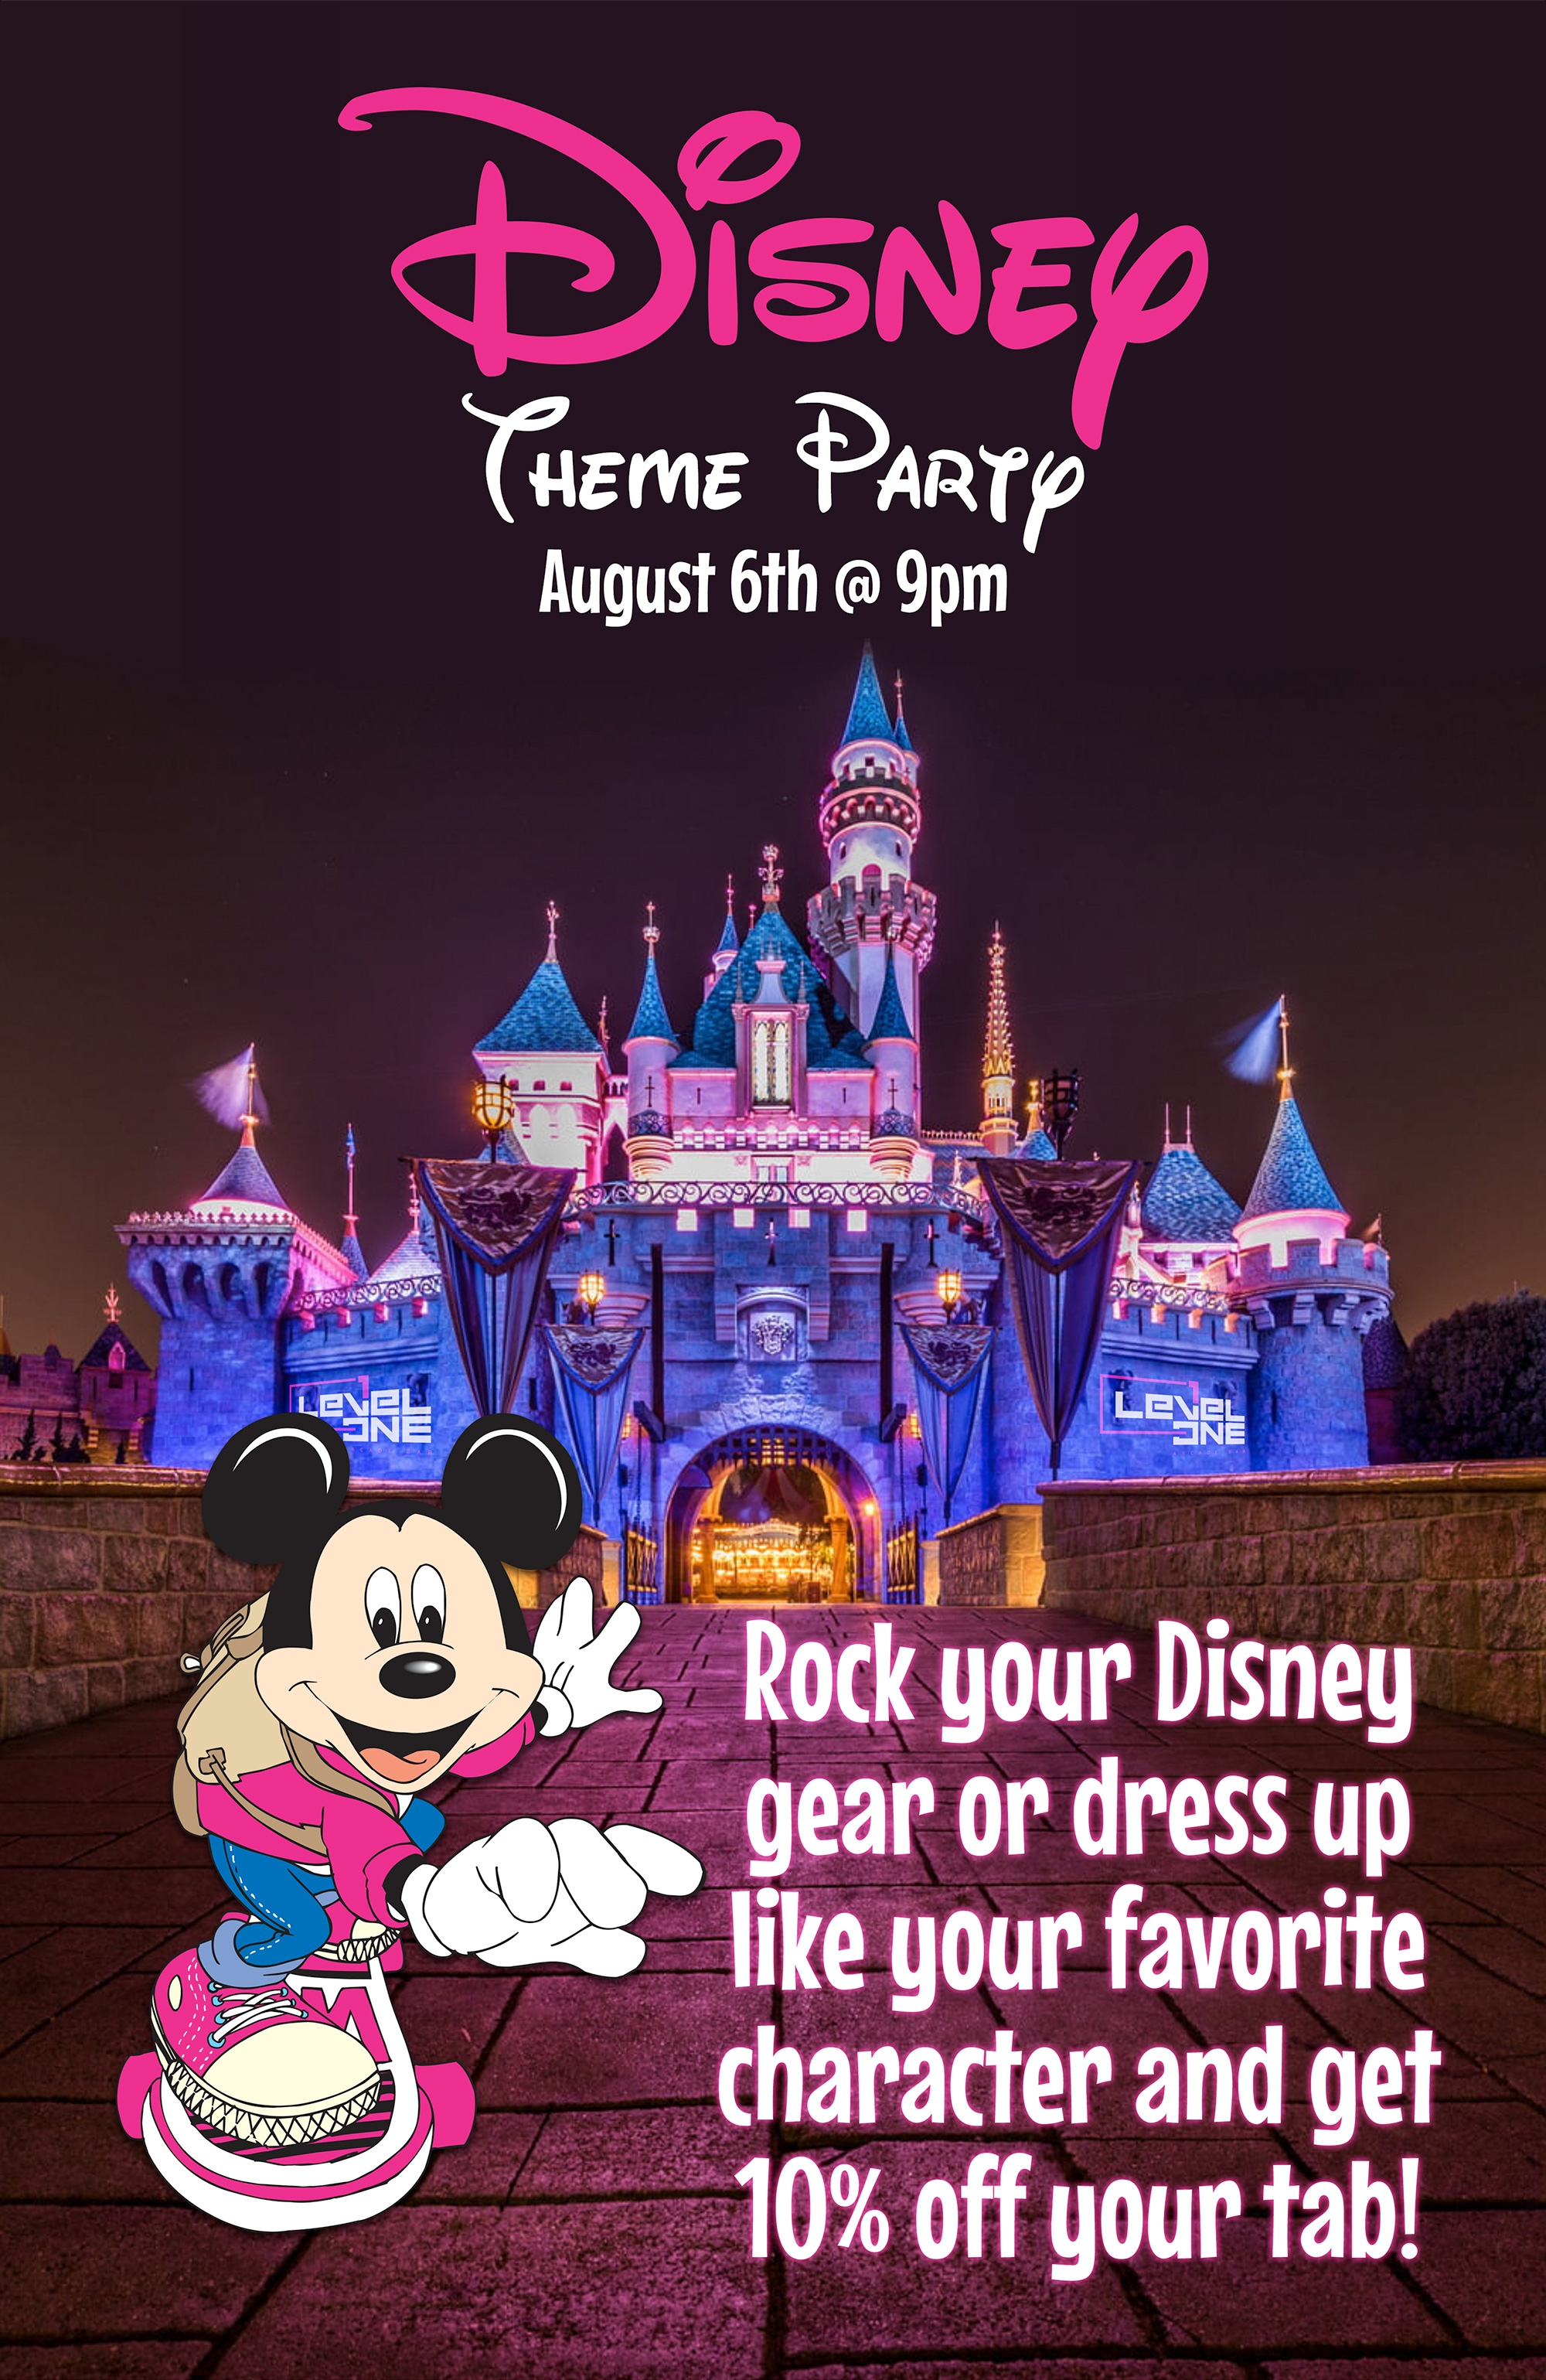 Disney Theme Party